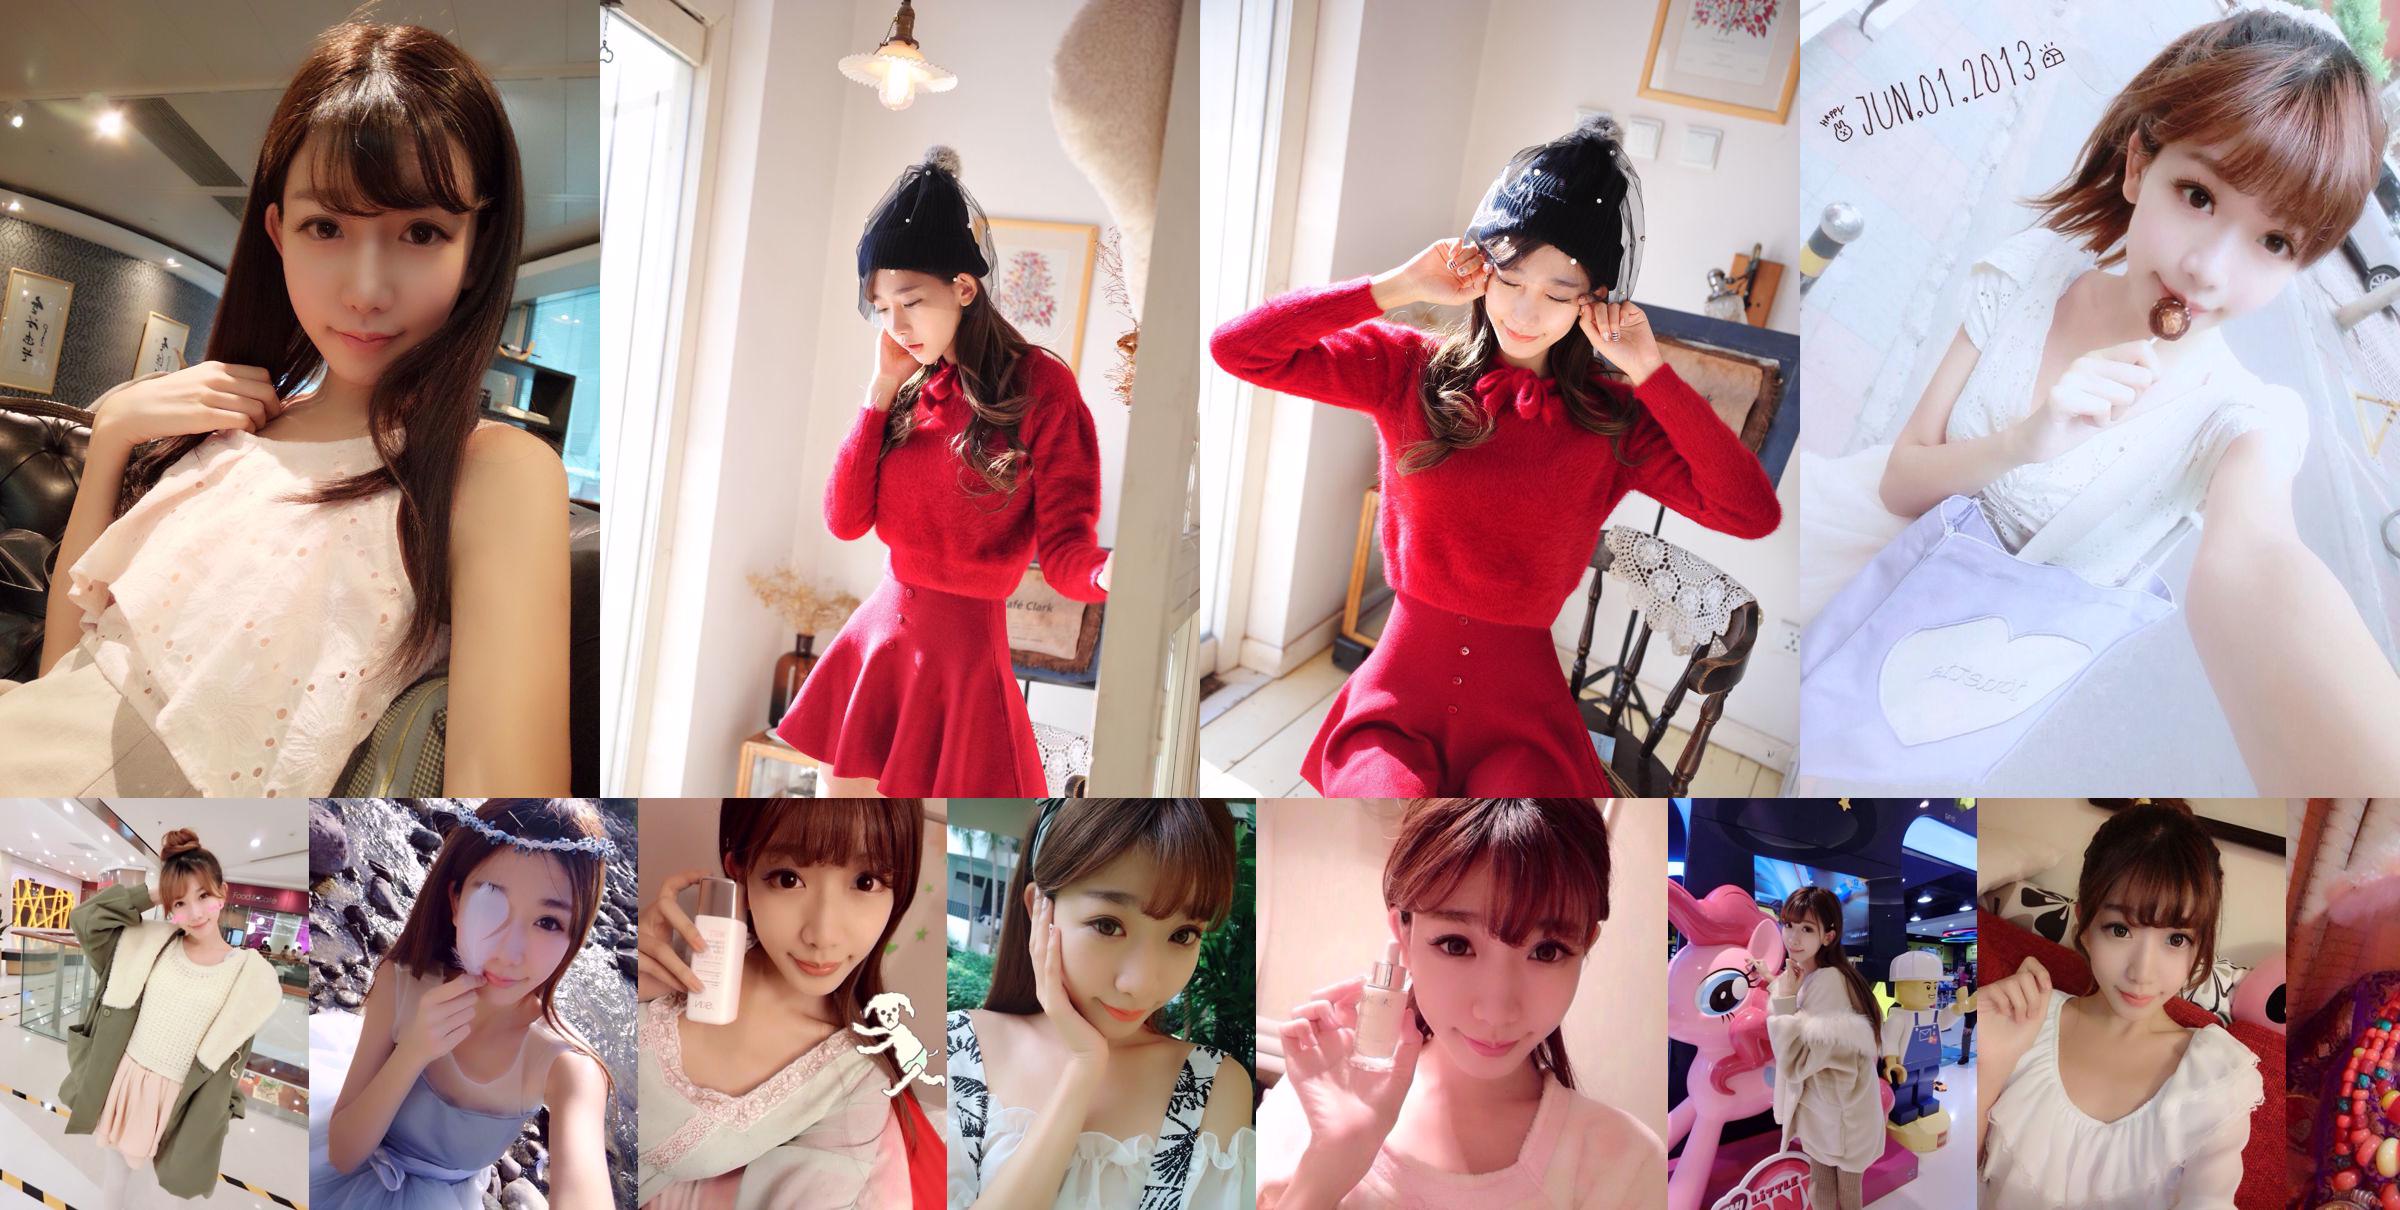 Тайваньская сестра интернет-знаменитости Чэнь Сяо "Weibo Selfie Pictures" Часть 1 Коллекция фотографий No.25b309 Страница 4